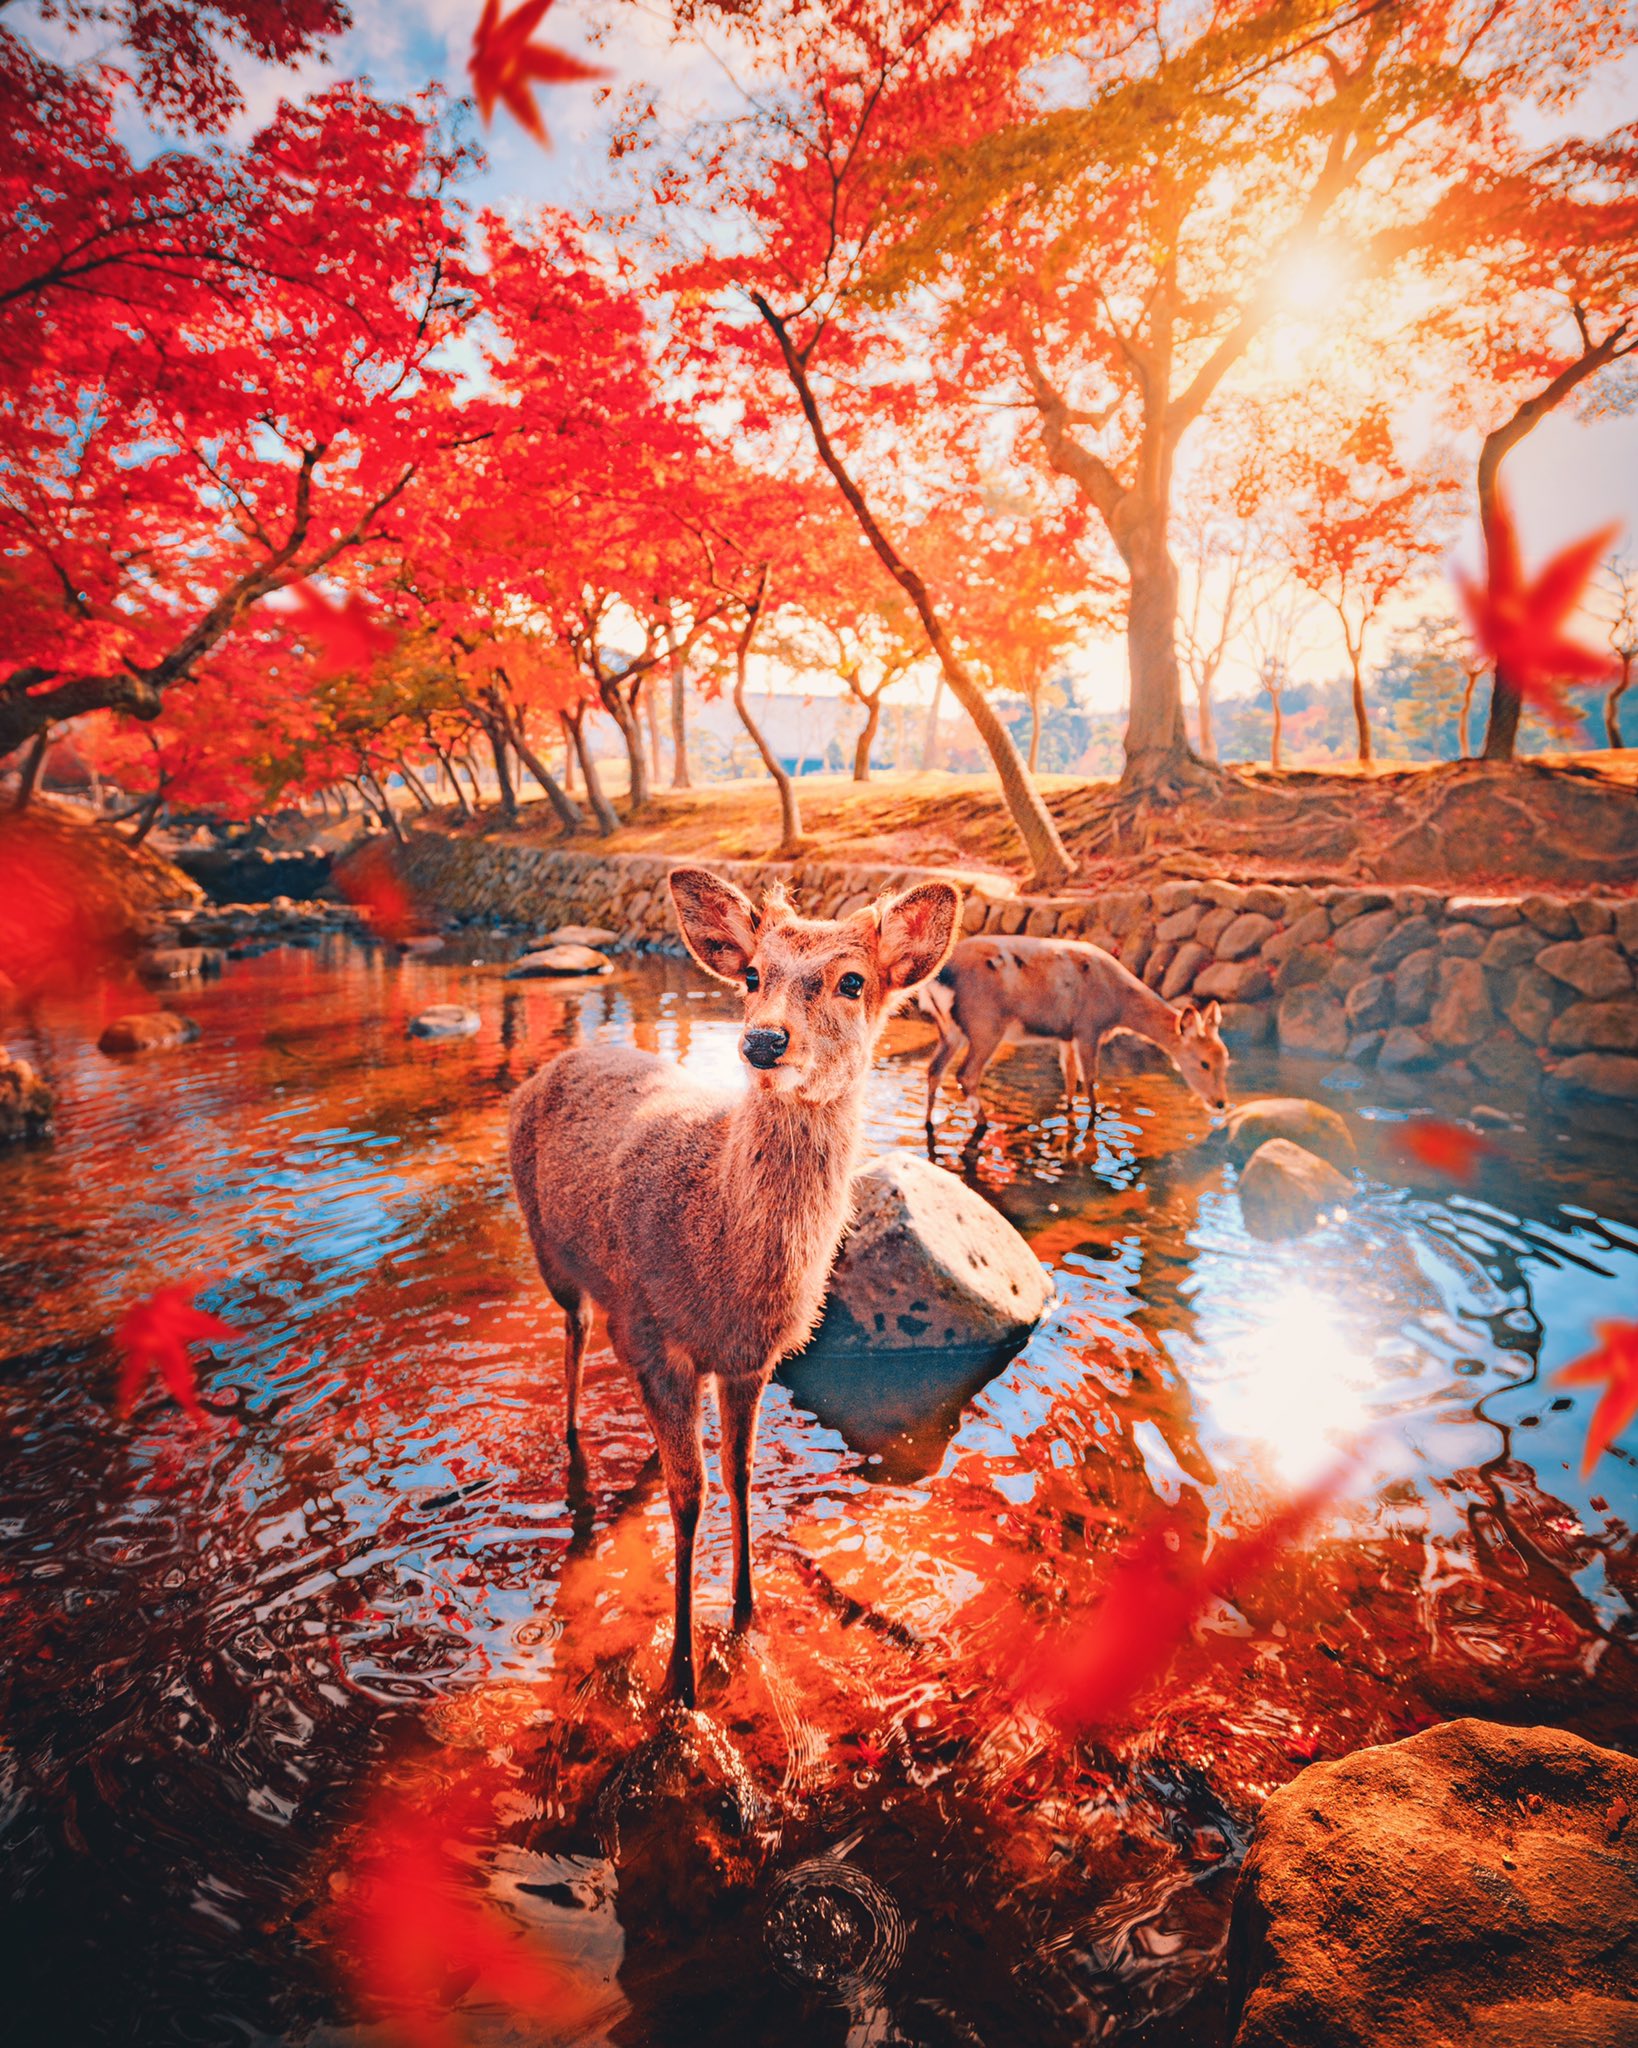 奈良公園 鹿と紅葉のキレイな一枚の写真 思わず言葉を失ってしまう 話題の画像プラス